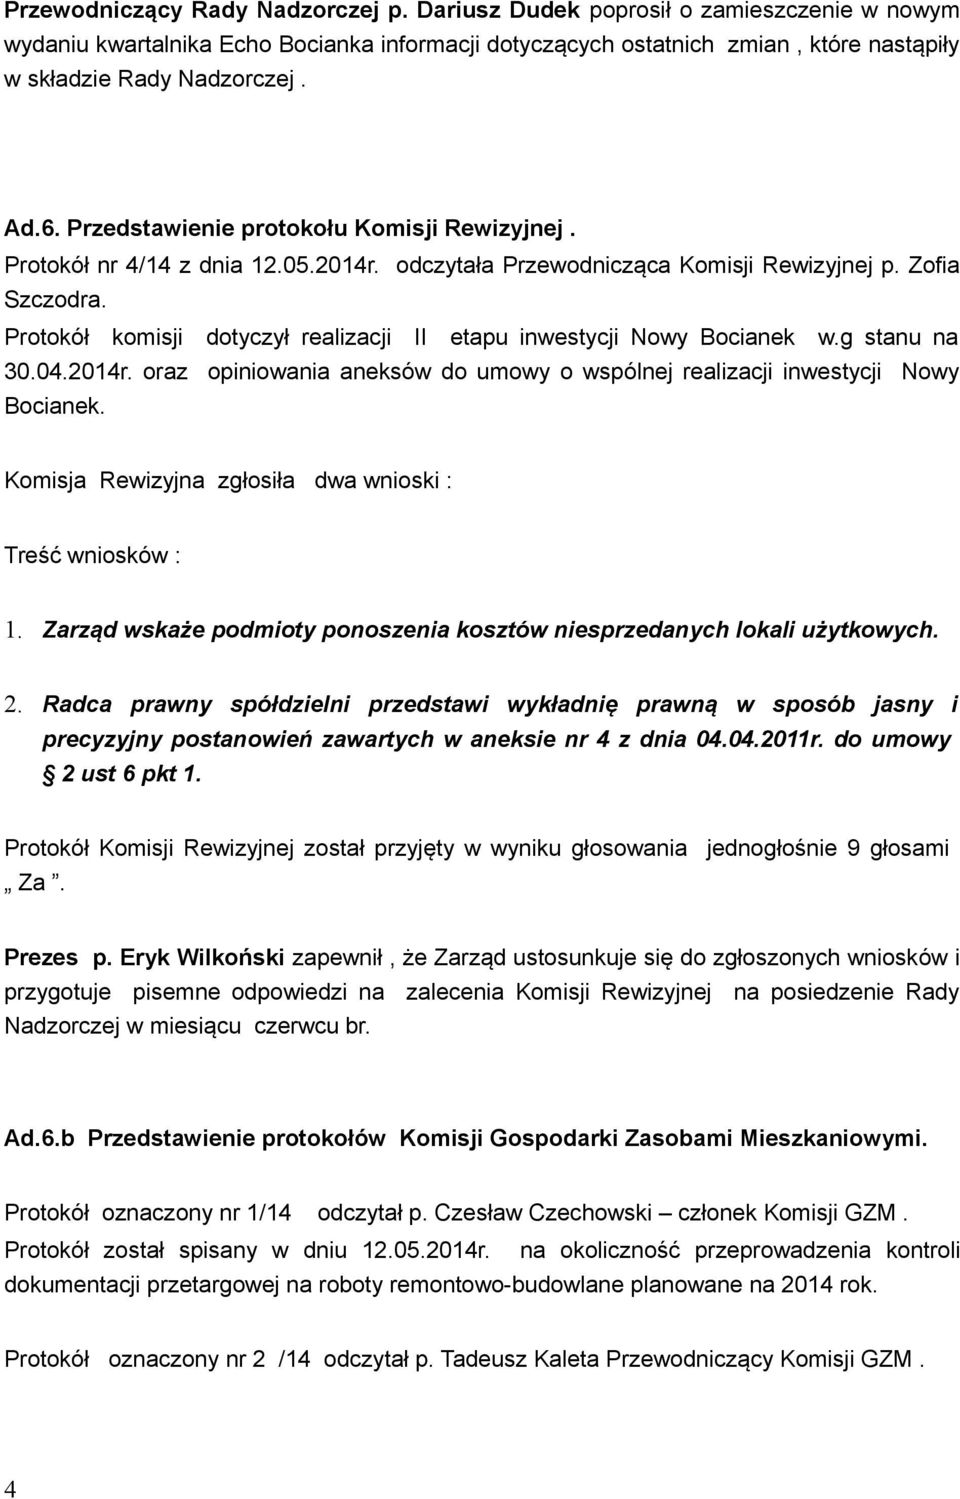 Protokół komisji dotyczył realizacji II etapu inwestycji Nowy Bocianek w.g stanu na 30.04.2014r. oraz opiniowania aneksów do umowy o wspólnej realizacji inwestycji Nowy Bocianek.